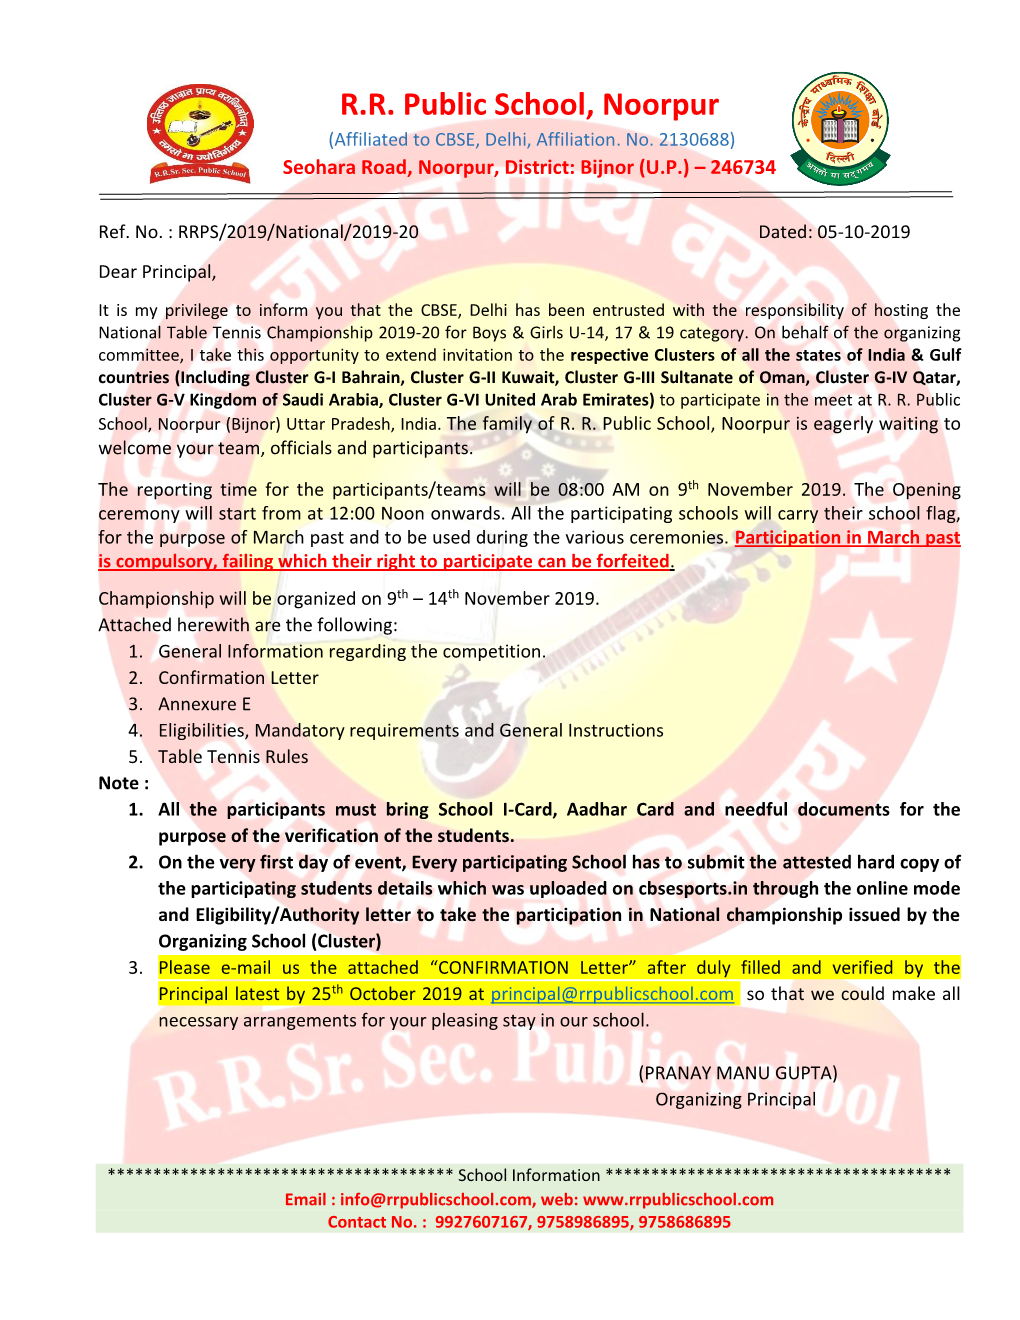 R.R. Public School, Noorpur (Affiliated to CBSE, Delhi, Affiliation